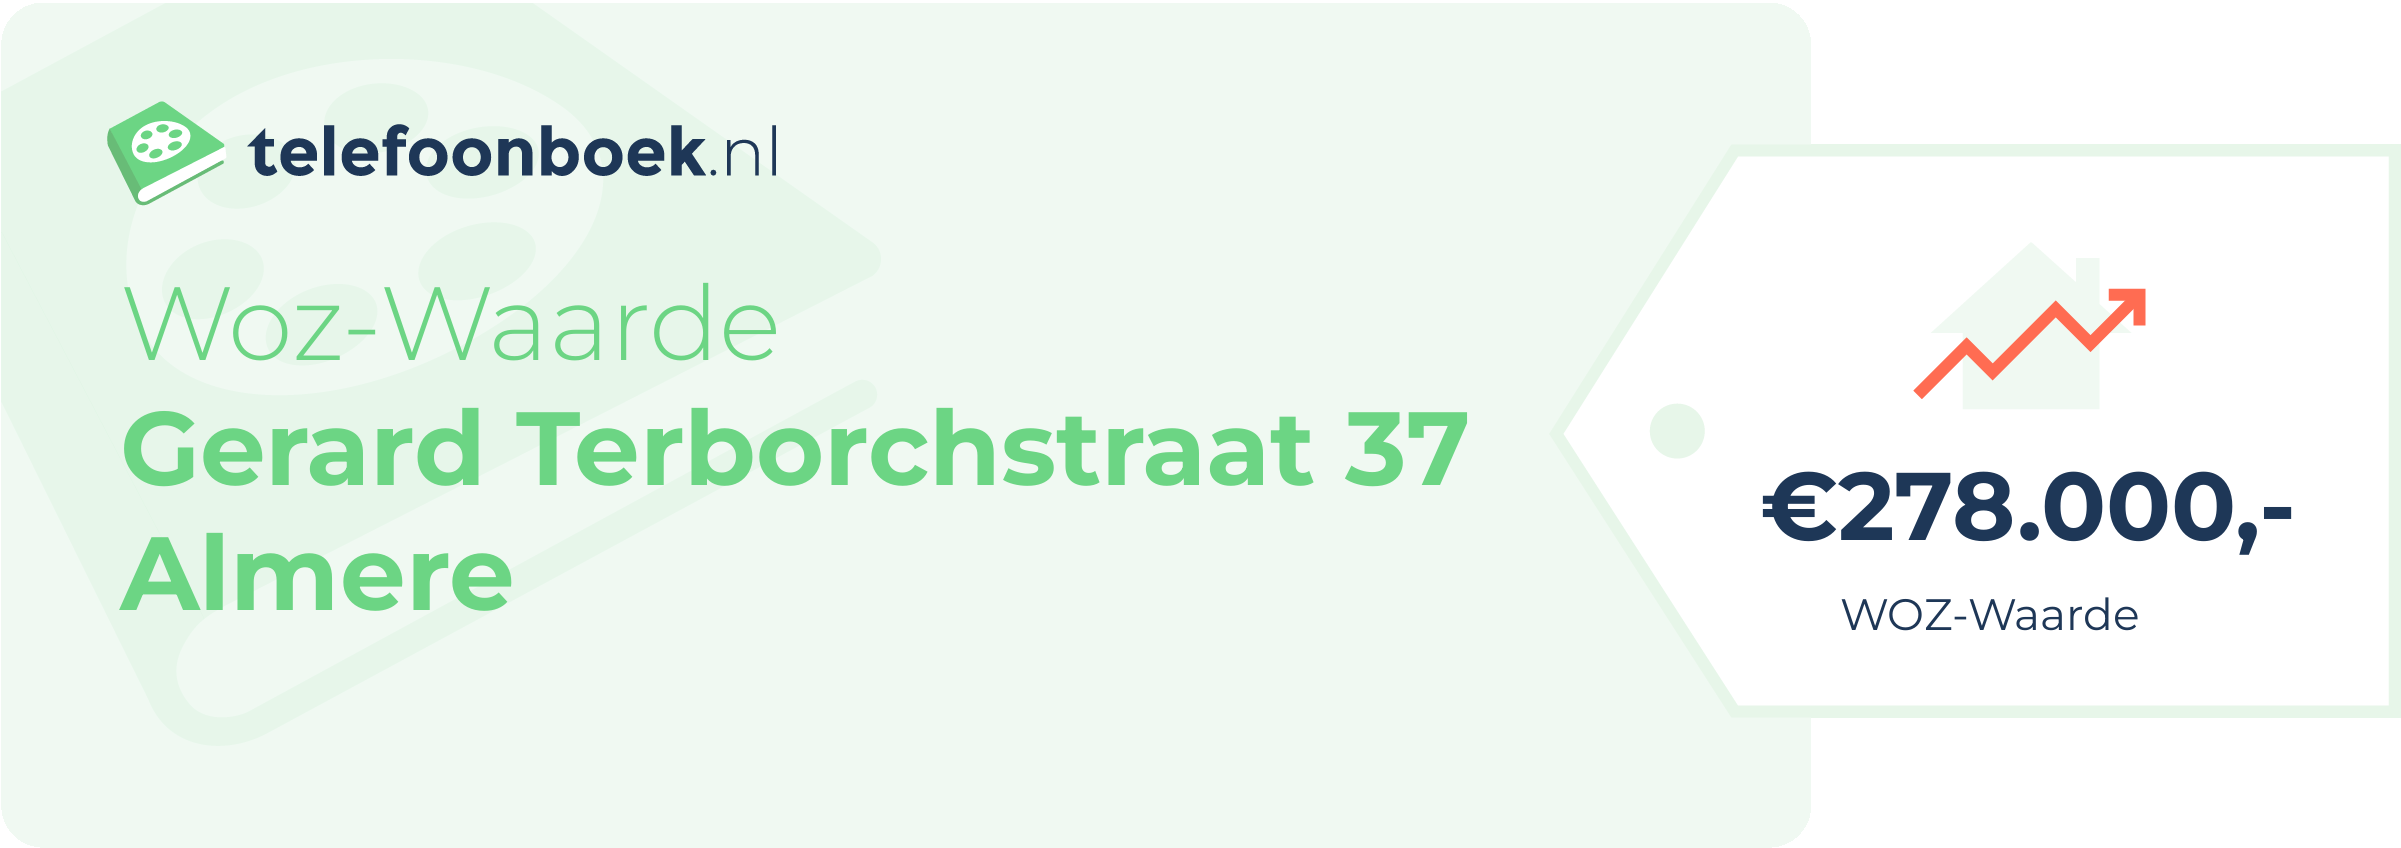 WOZ-waarde Gerard Terborchstraat 37 Almere